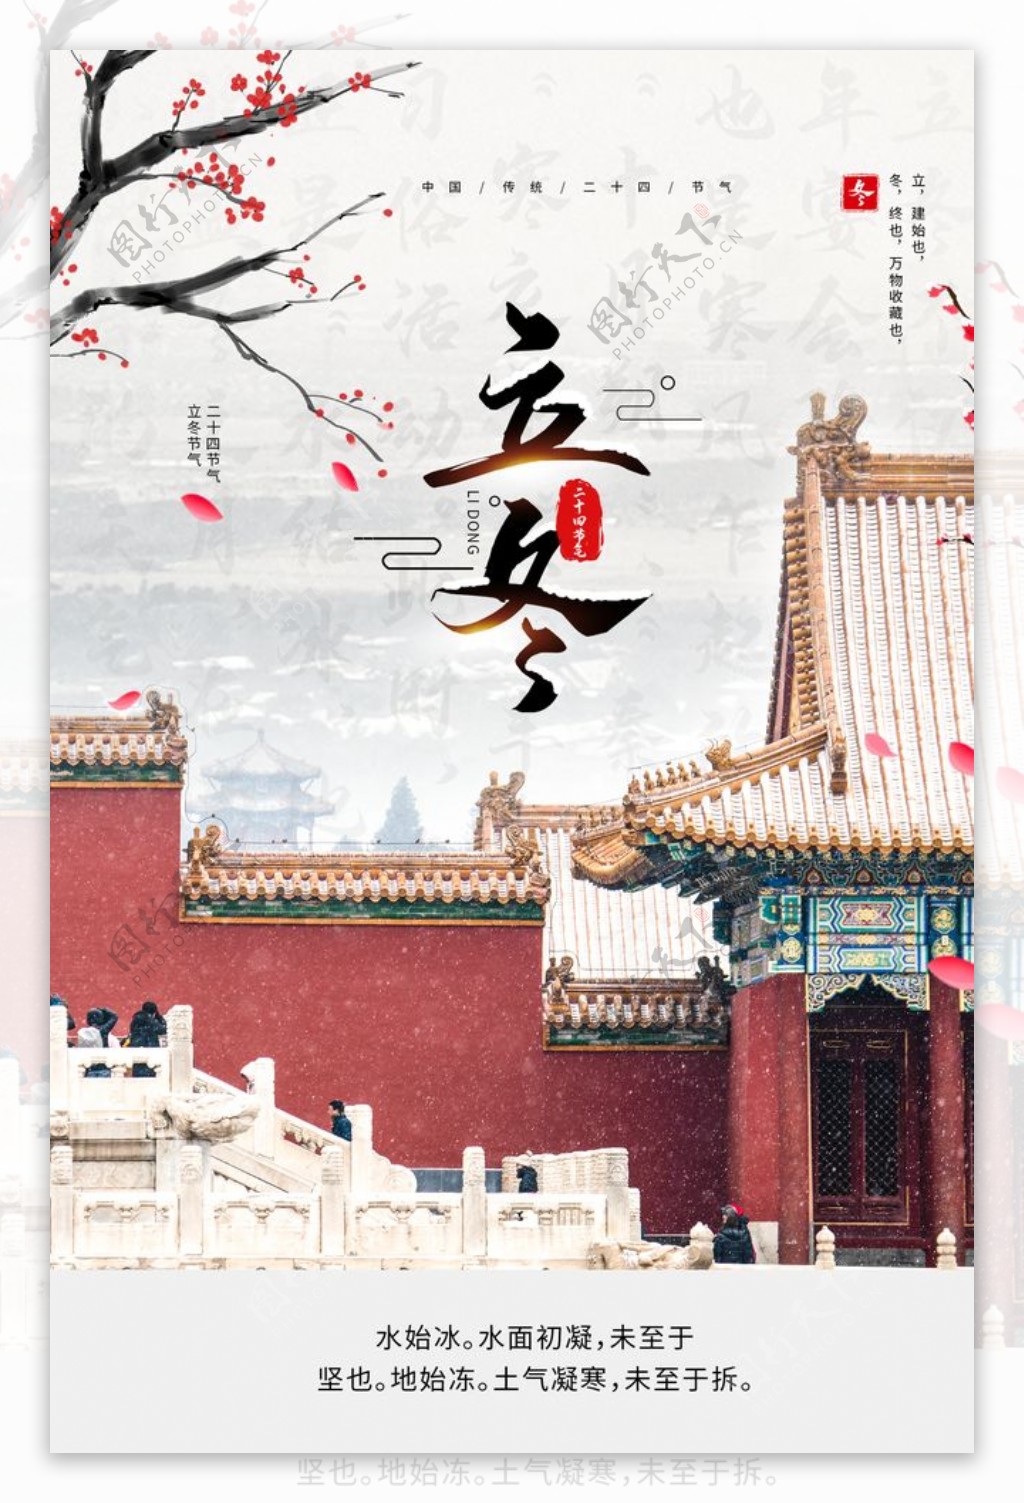 立冬传统节日活动宣传海报素材图片